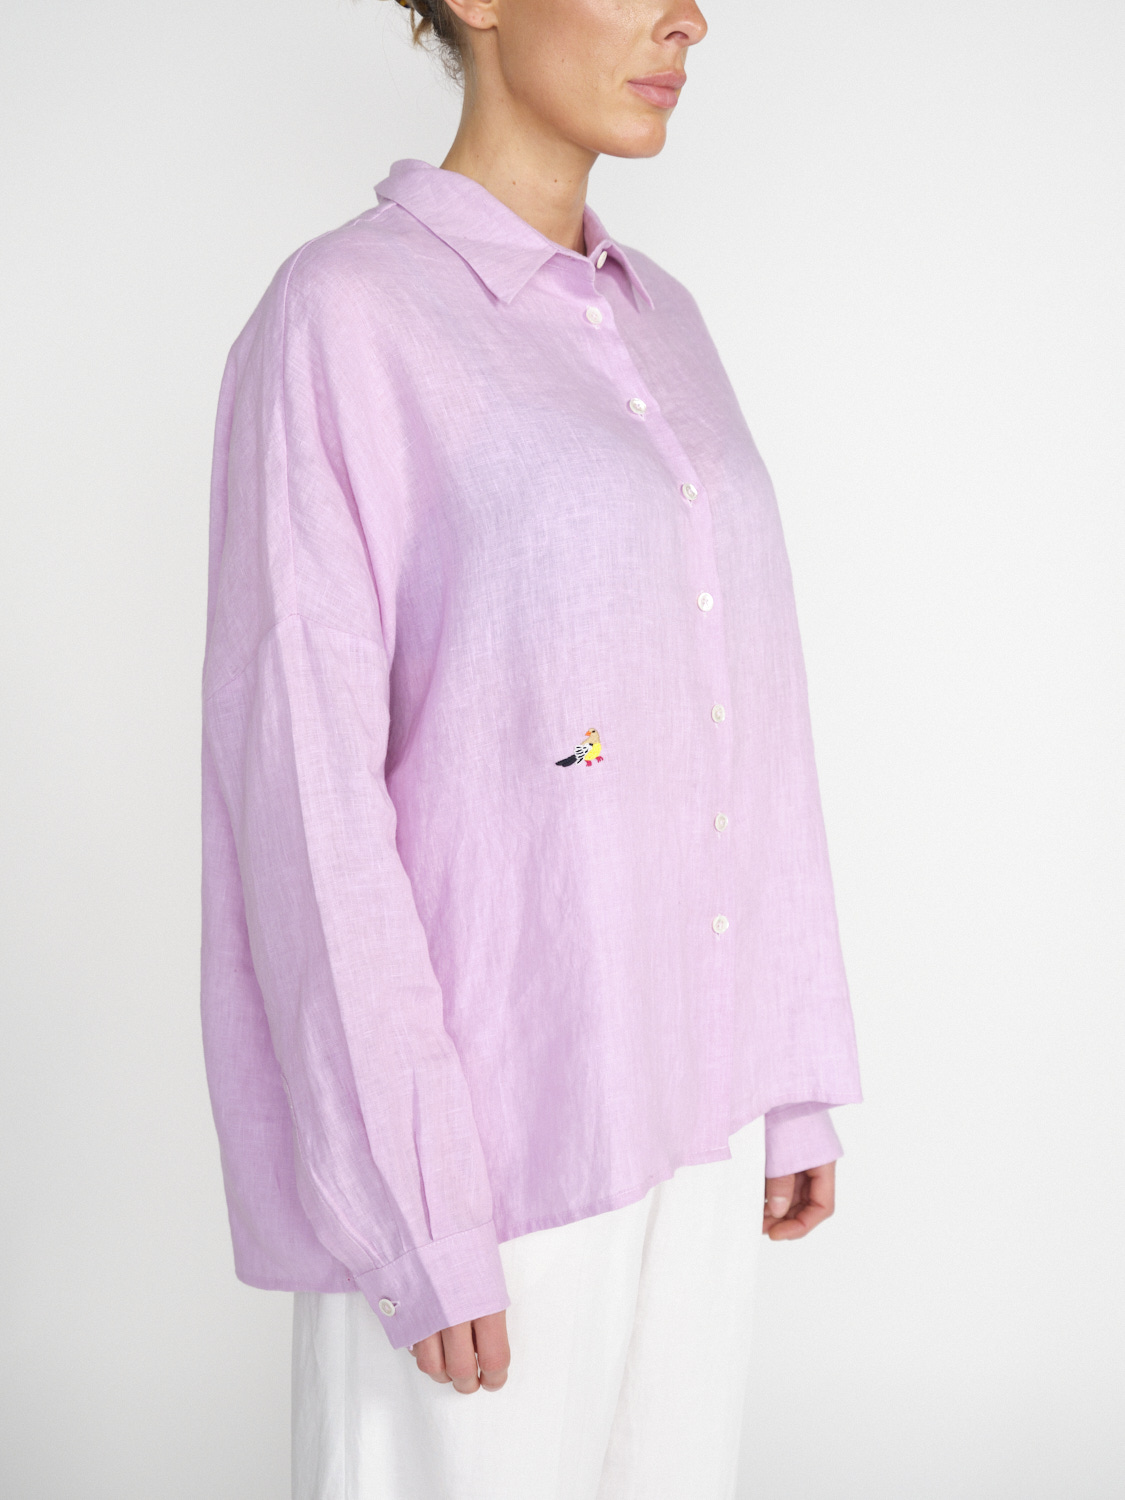 an an londree Summer – linen blouse with playful details  rosa S